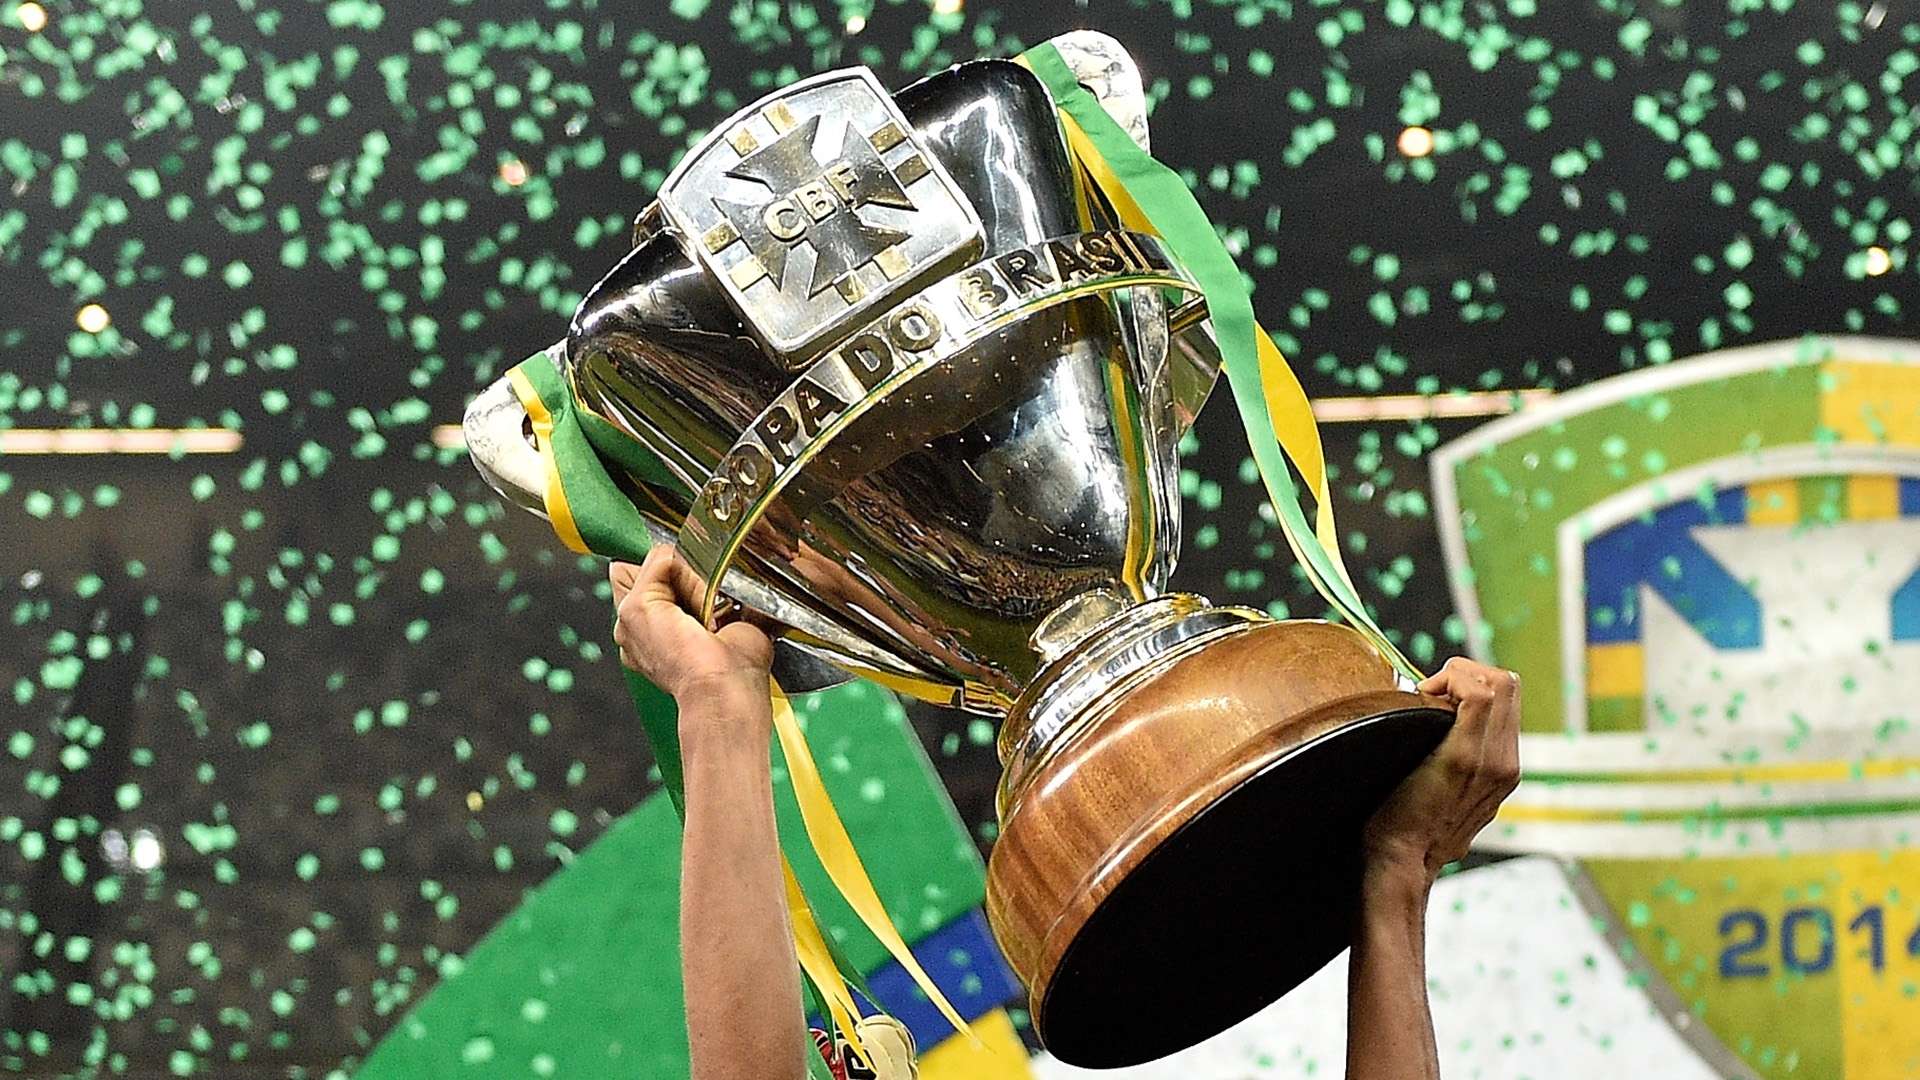 Copa do Brasil trophy troféu 2014